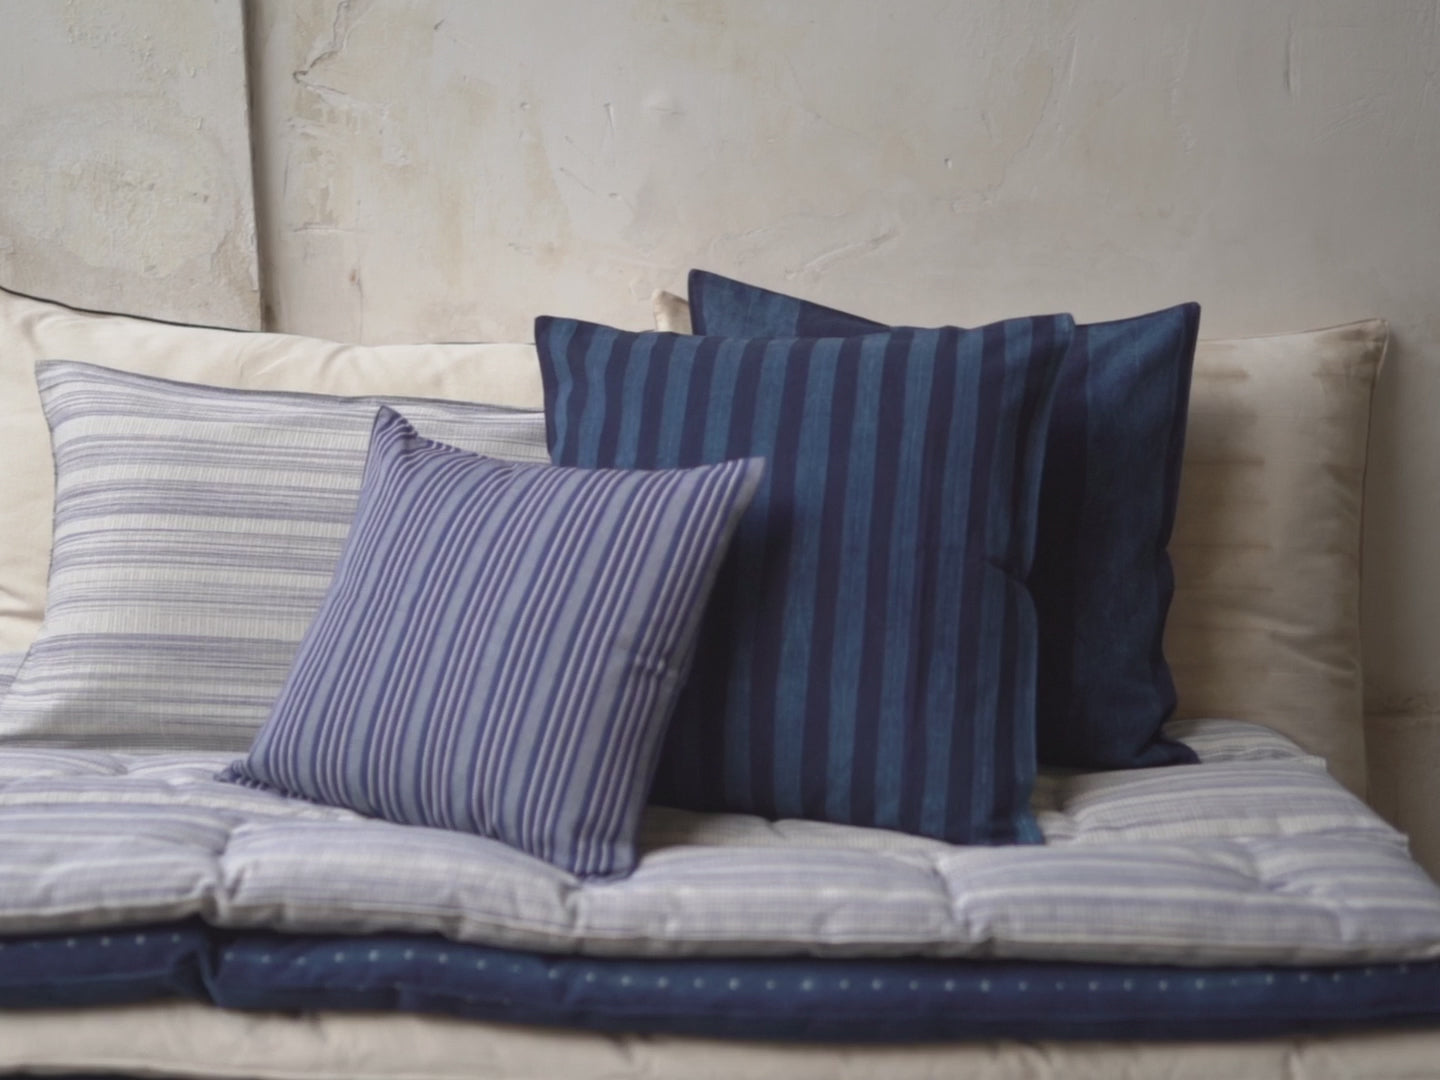 Cushion cover no 7 dark blue, 50 x 50 cm